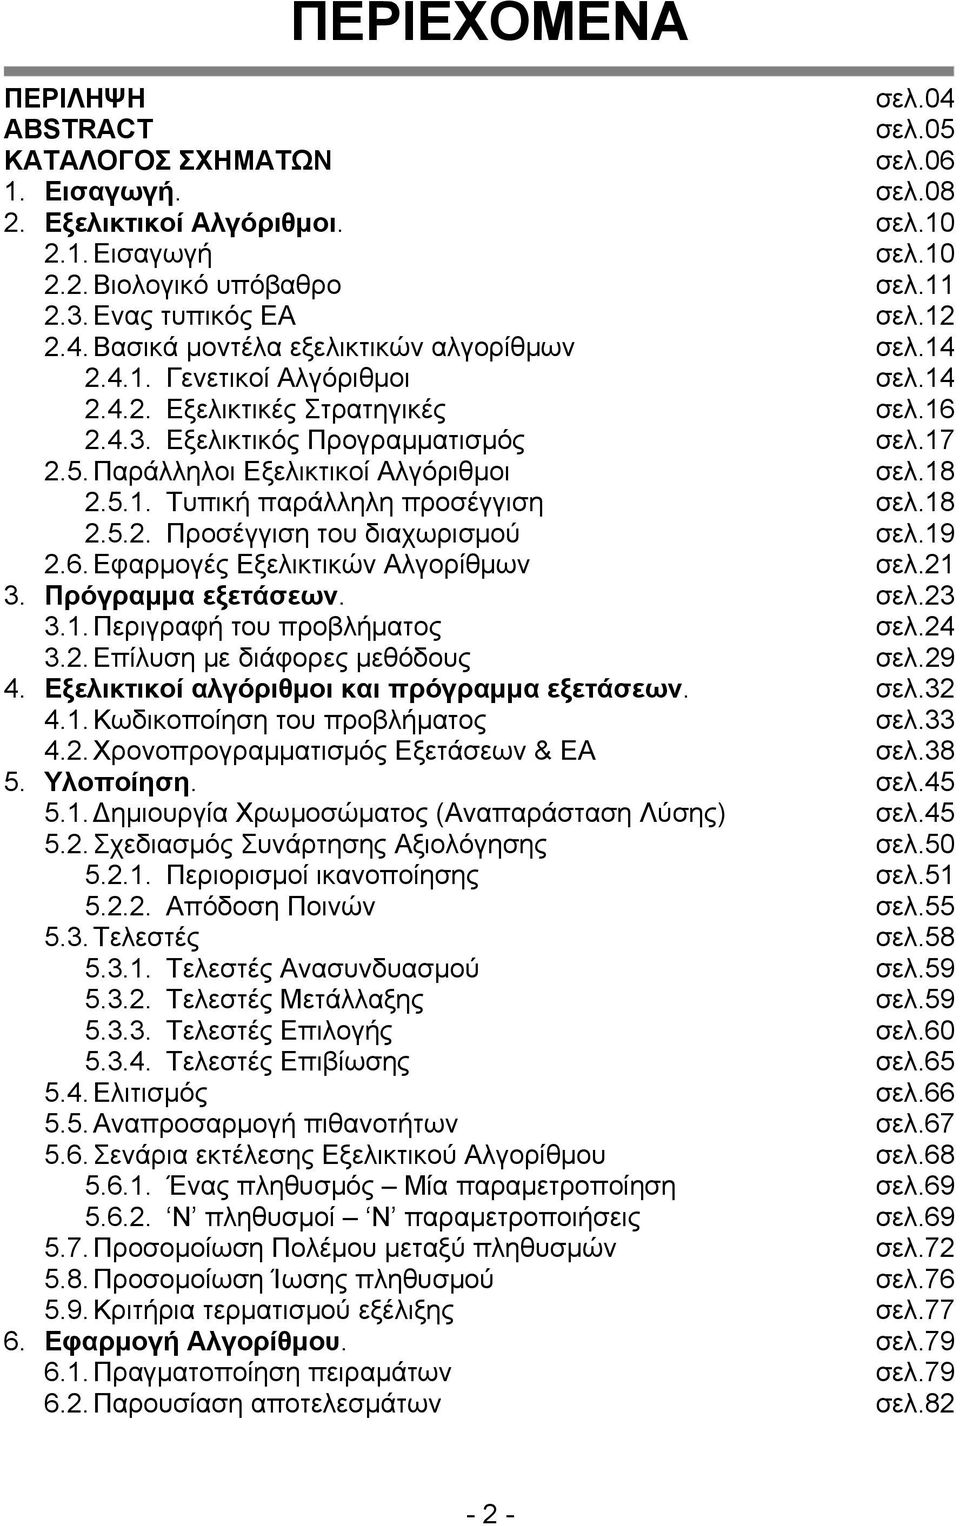 Παράλληλοι Εξελικτικοί Αλγόριθμοι σελ.18 2.5.1. Τυπική παράλληλη προσέγγιση σελ.18 2.5.2. Προσέγγιση του διαχωρισμού σελ.19 2.6. Εφαρμογές Εξελικτικών Αλγορίθμων σελ.21 3. Πρόγραμμα εξετάσεων. σελ.23 3.